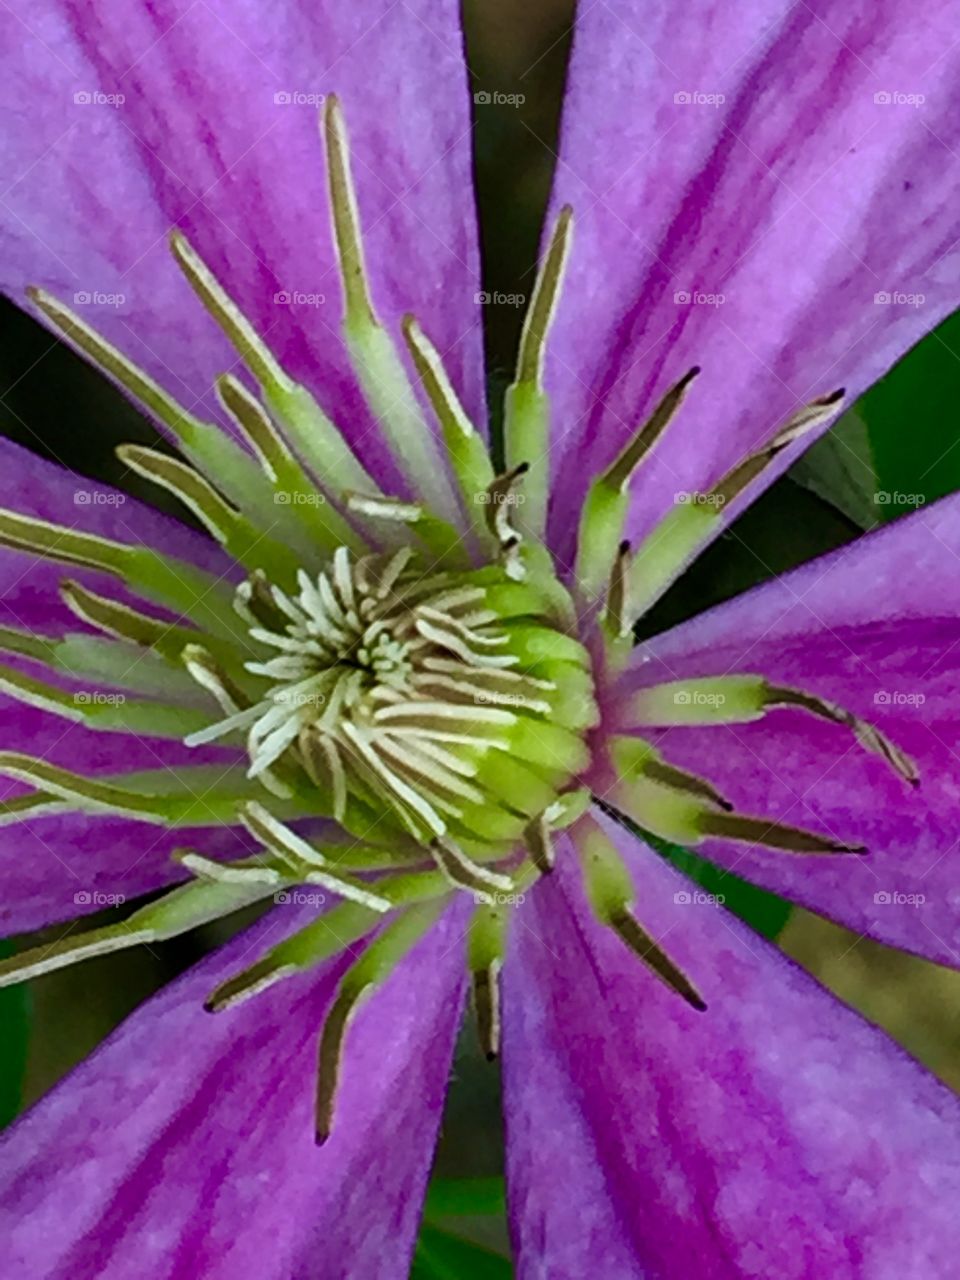 Clematis bloom